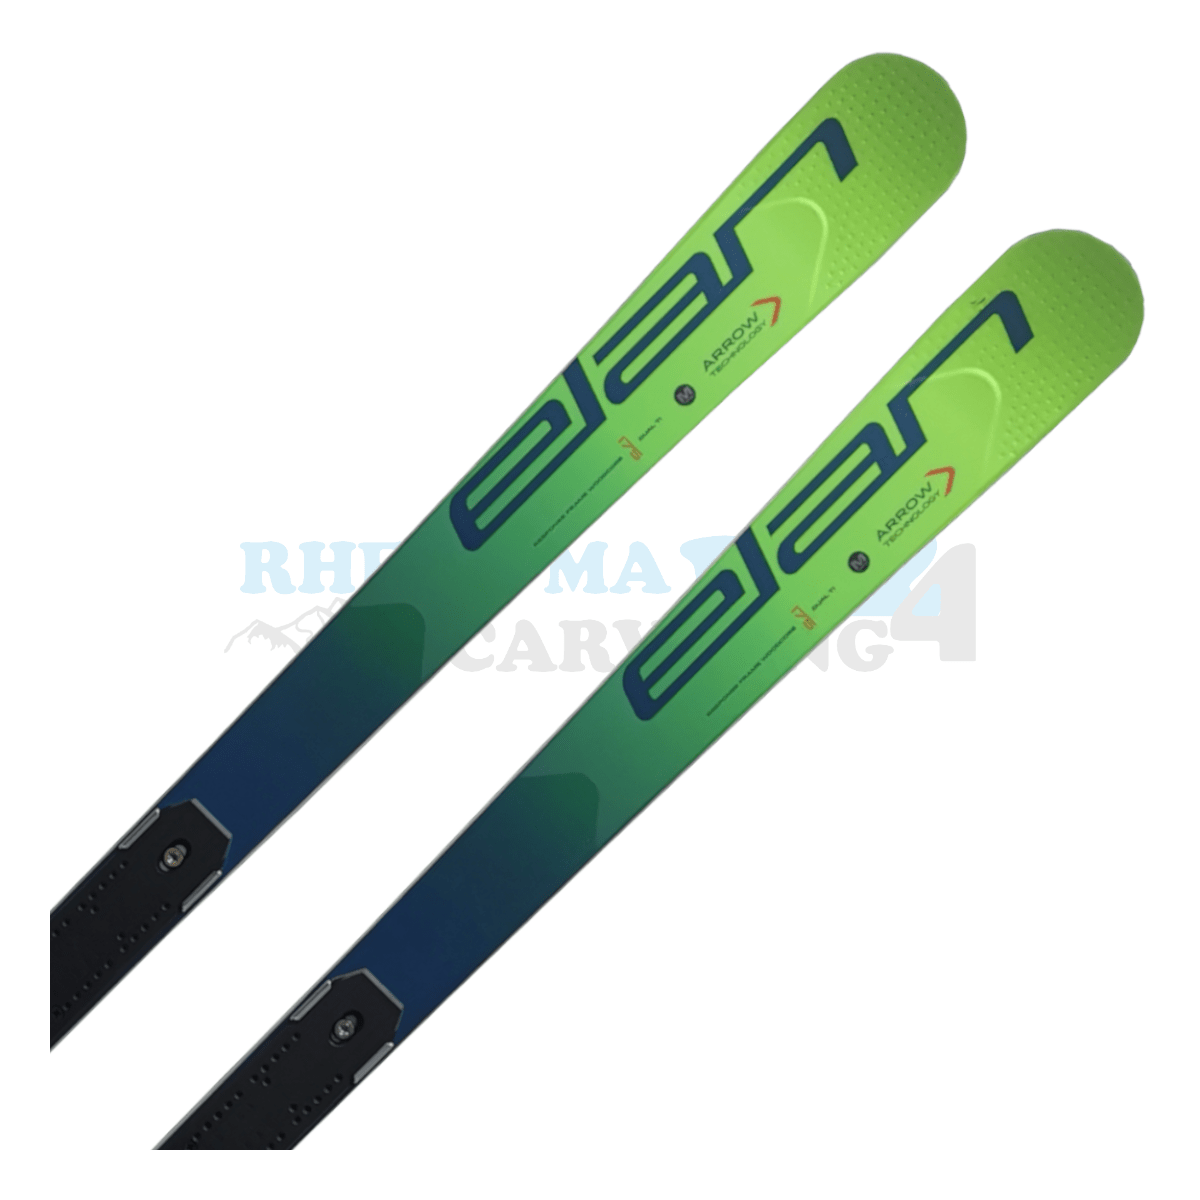 Elan GSX Master mit der Rennplatte, der Ski ist aus dem Jahr 2020, die Farbe ist grün, die Ansicht des oberen Teils des Skis